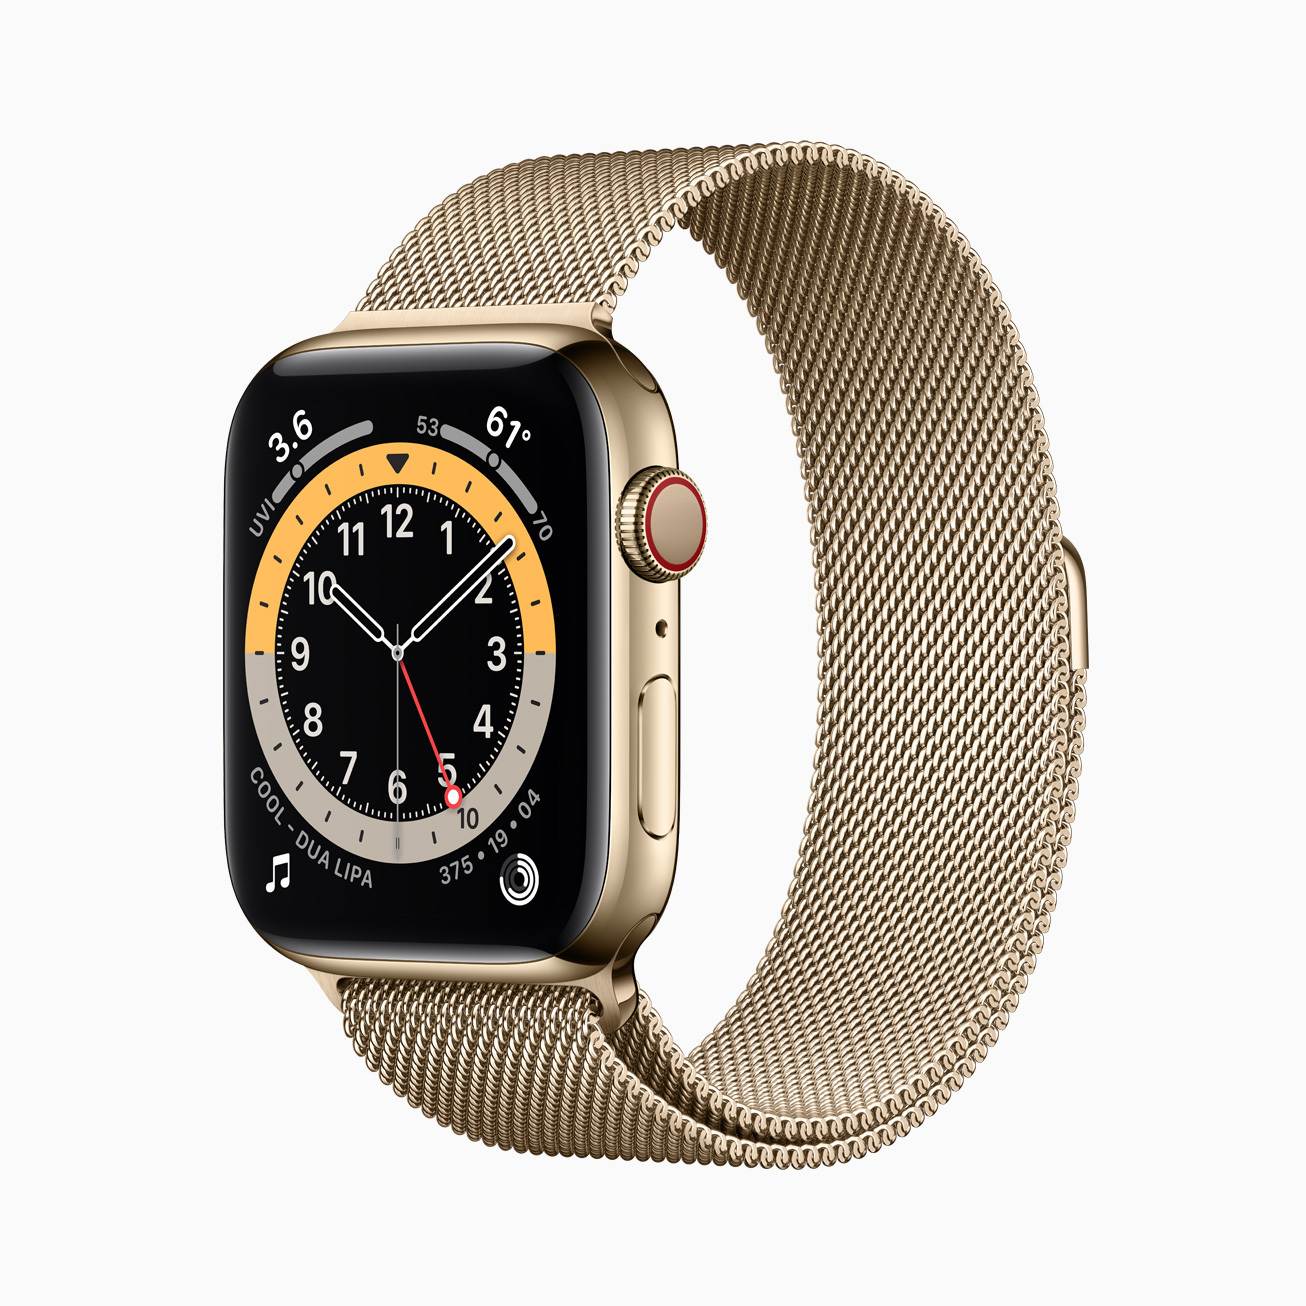 全国配送無料の-Apple(アップル) Apple Watch Series 6 GPS 40mm